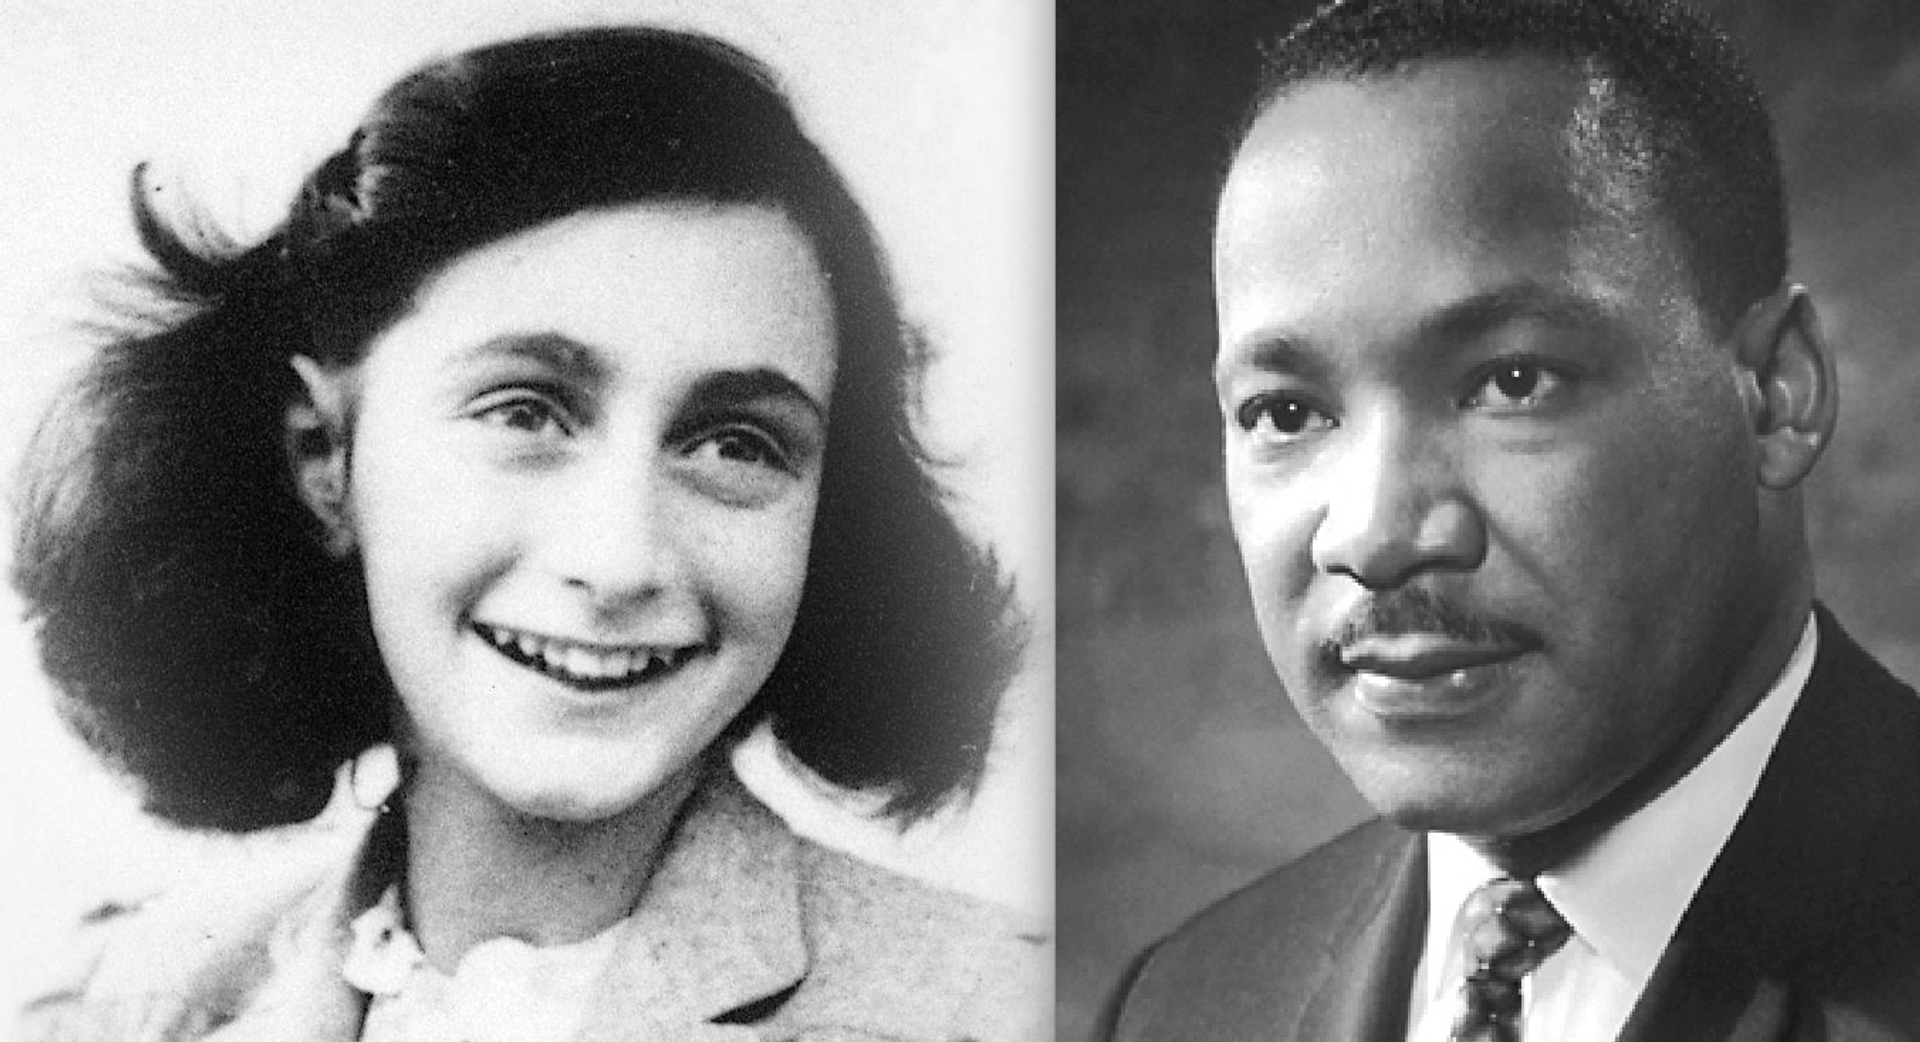 Afbeelding van De gladgestreken symboliek van Anne Frank en Martin Luther King